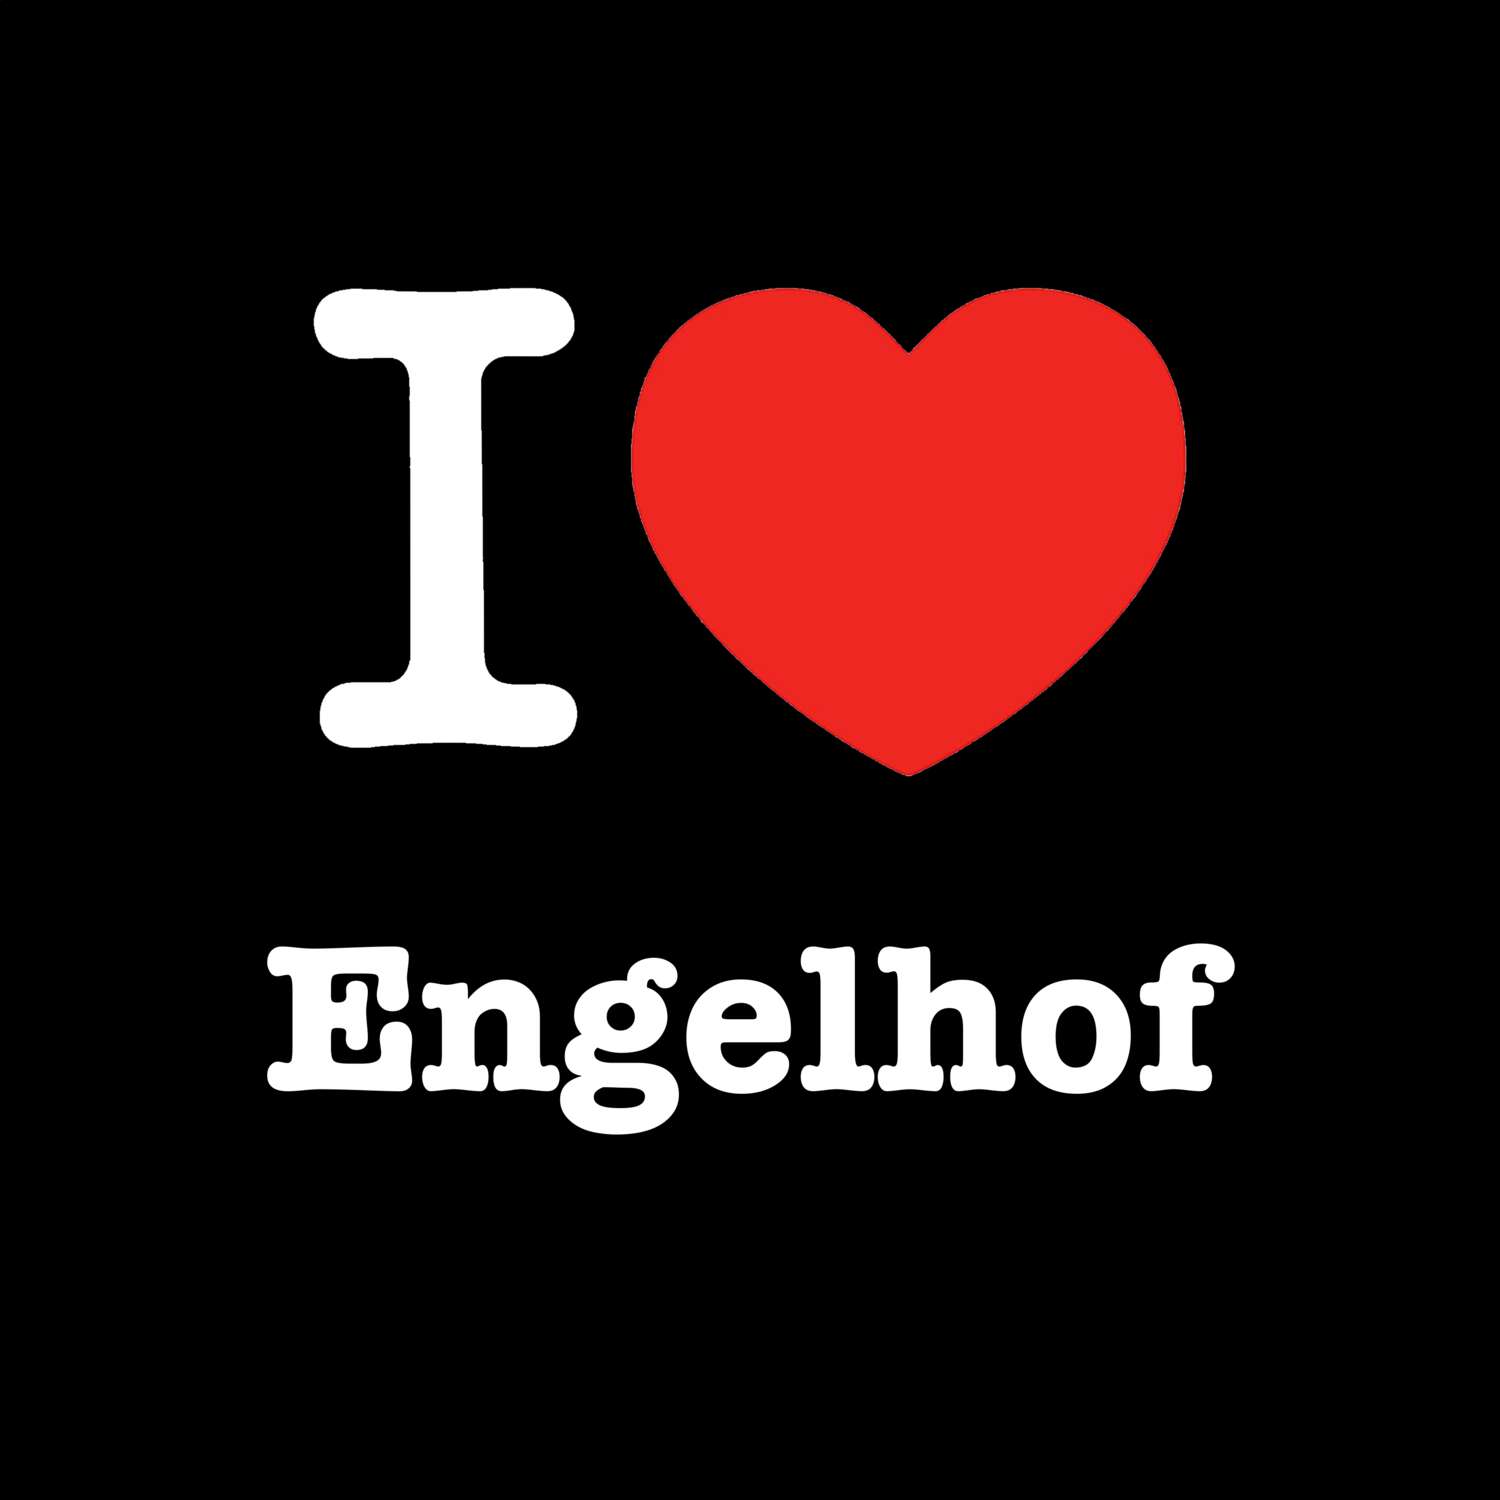 Engelhof T-Shirt »I love«